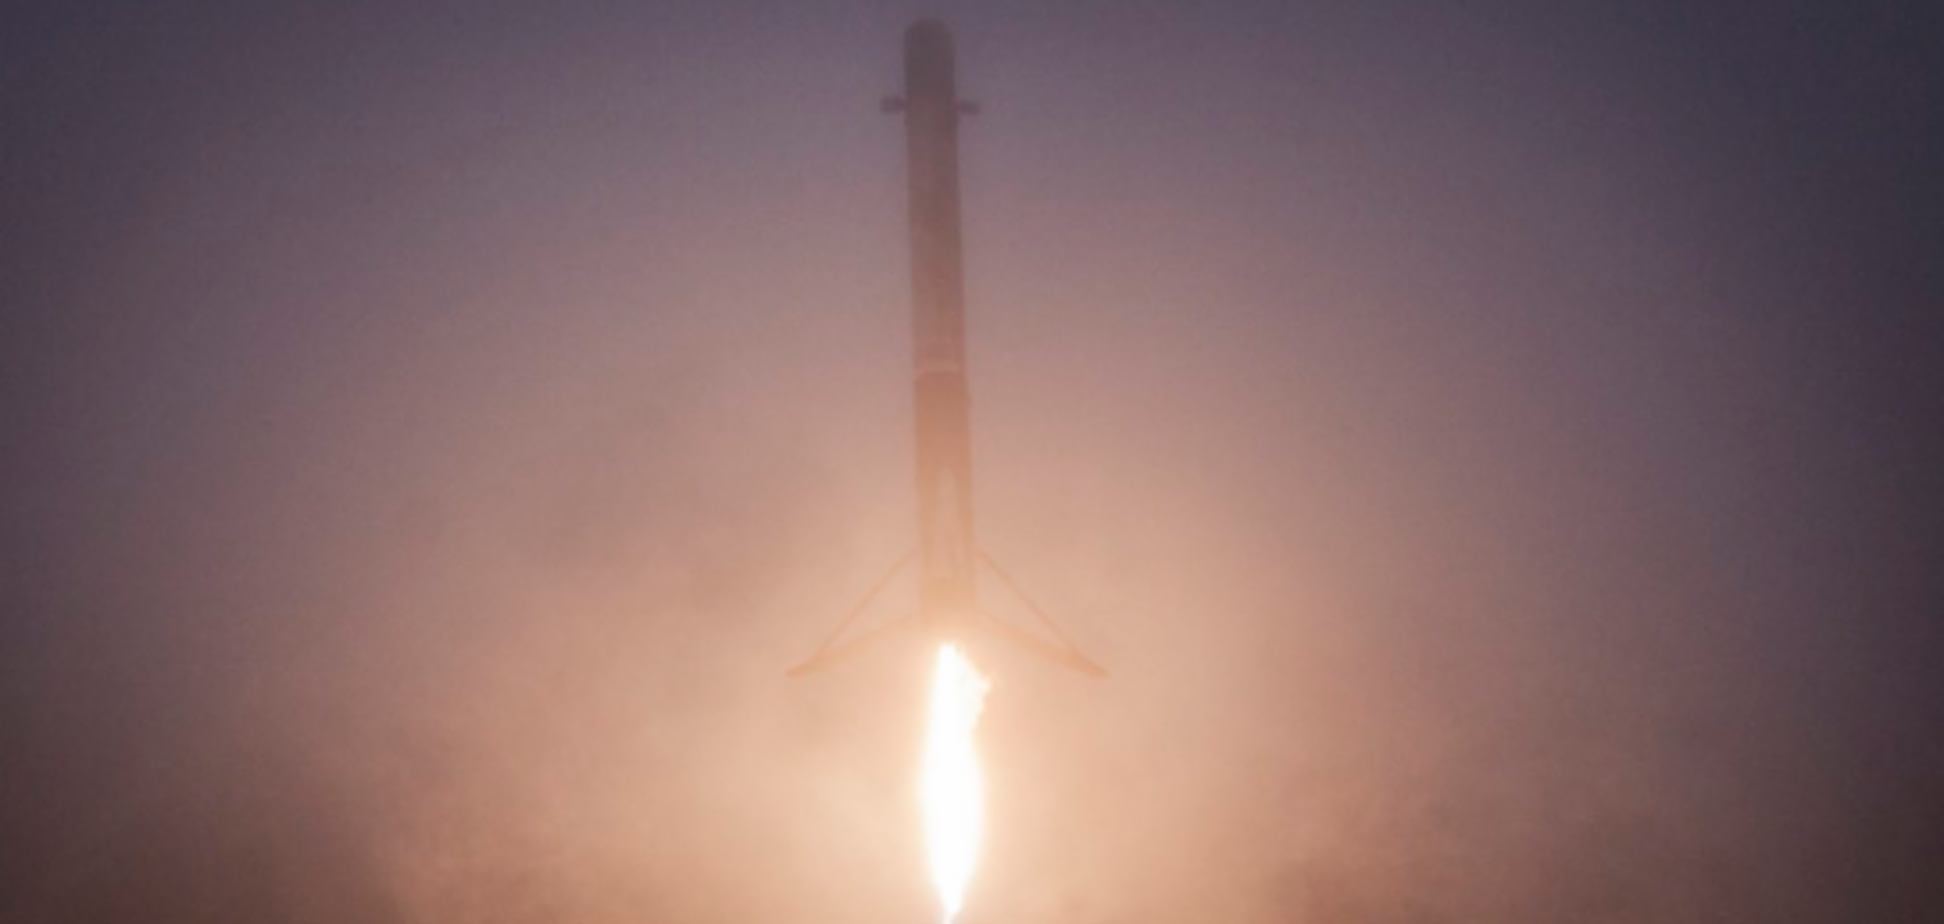 Маск успешно запустил новую ракету в космос: впечатляющие фото